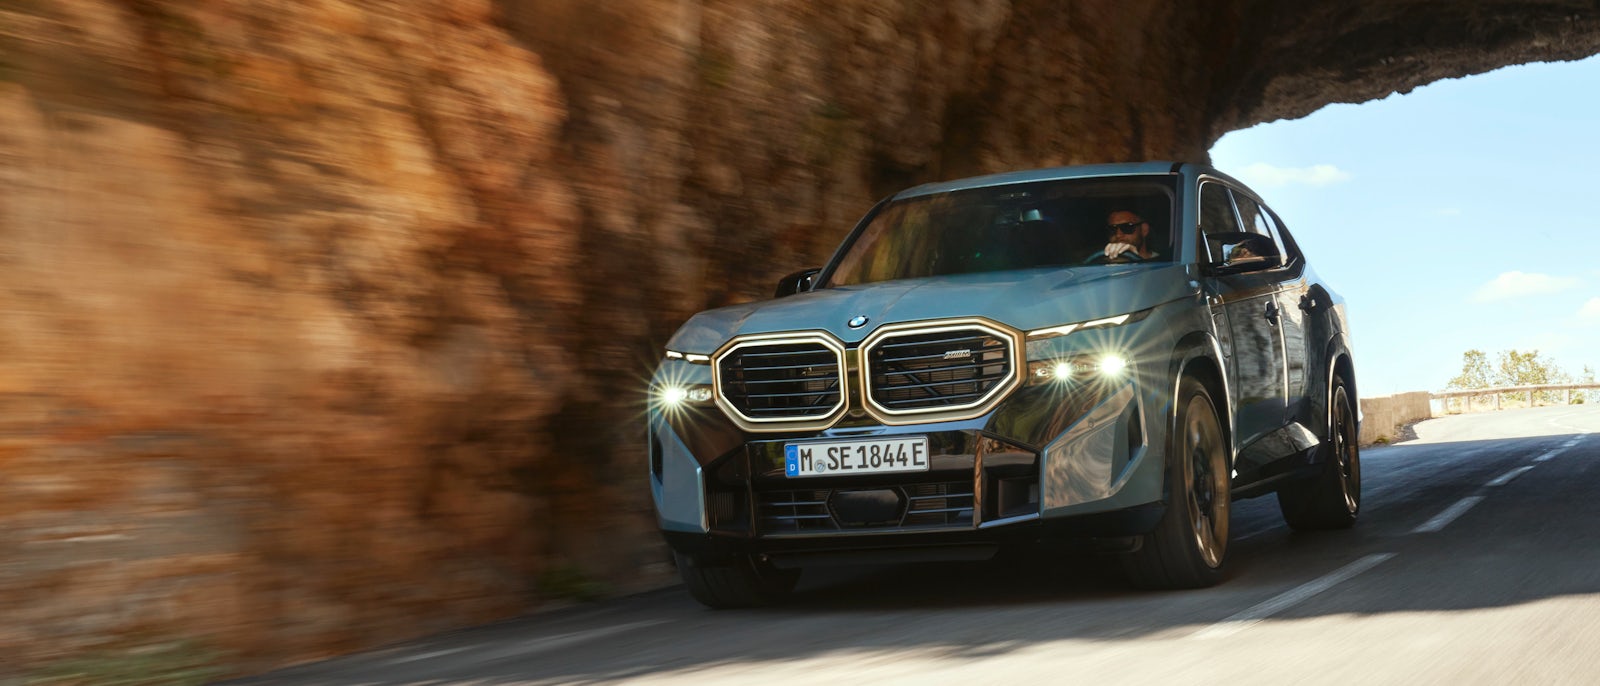 BMW XM angeteasert: Preise, Motoren und Verkaufsstart